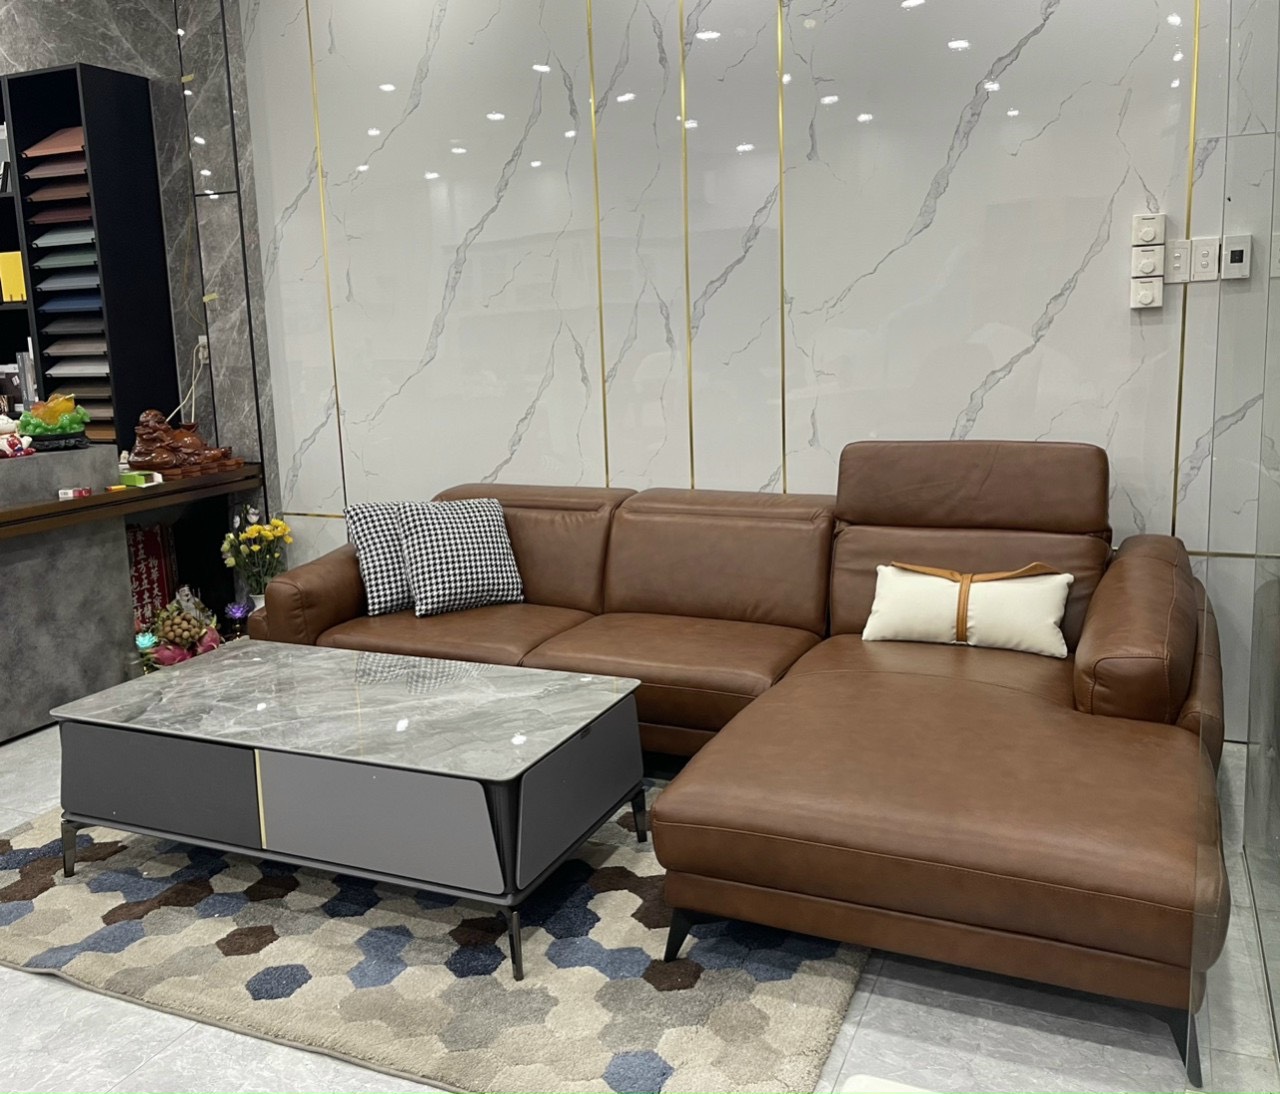 Sửa ghế sofa sẽ mang tới diện mạo hoàn toàn mới cho không gian nhà bạn